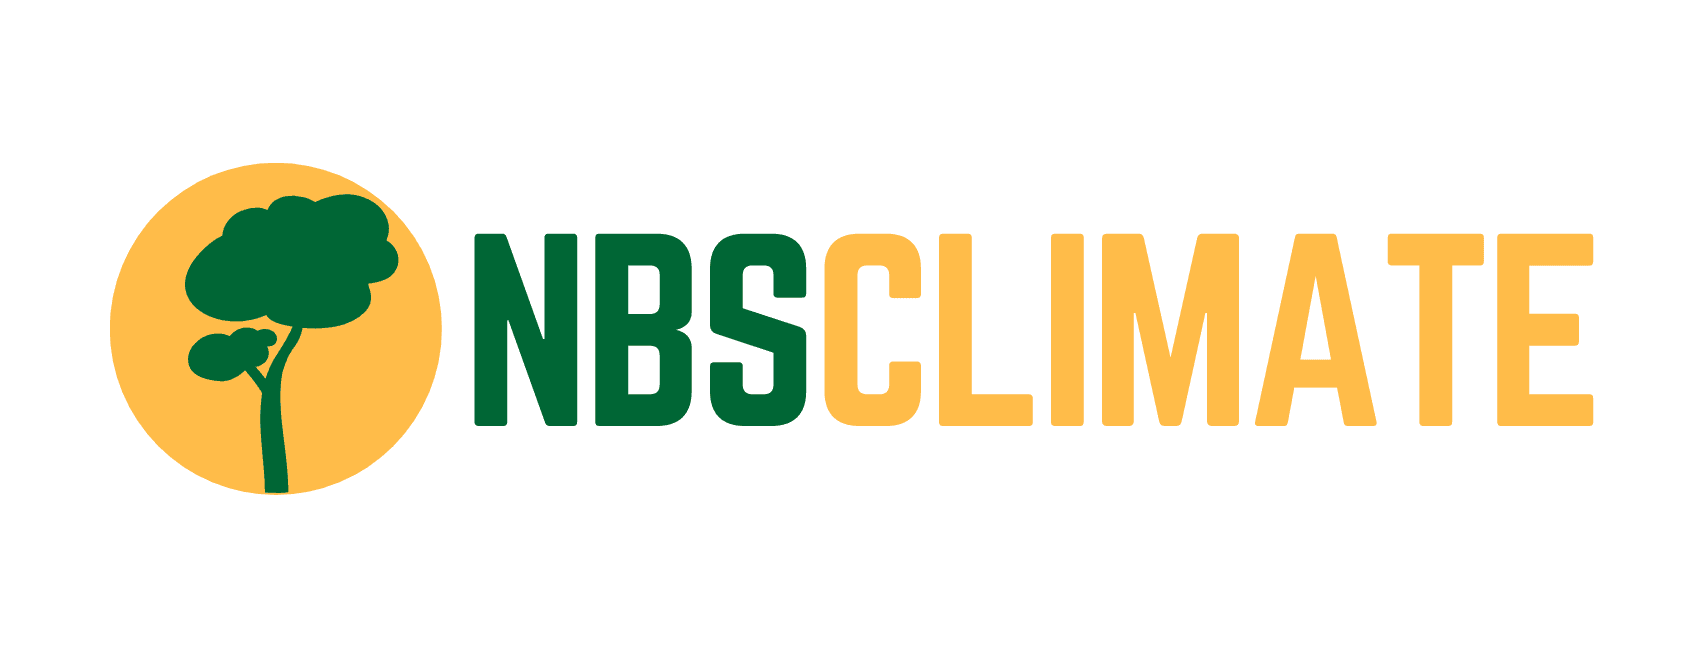 NBSClimate logo